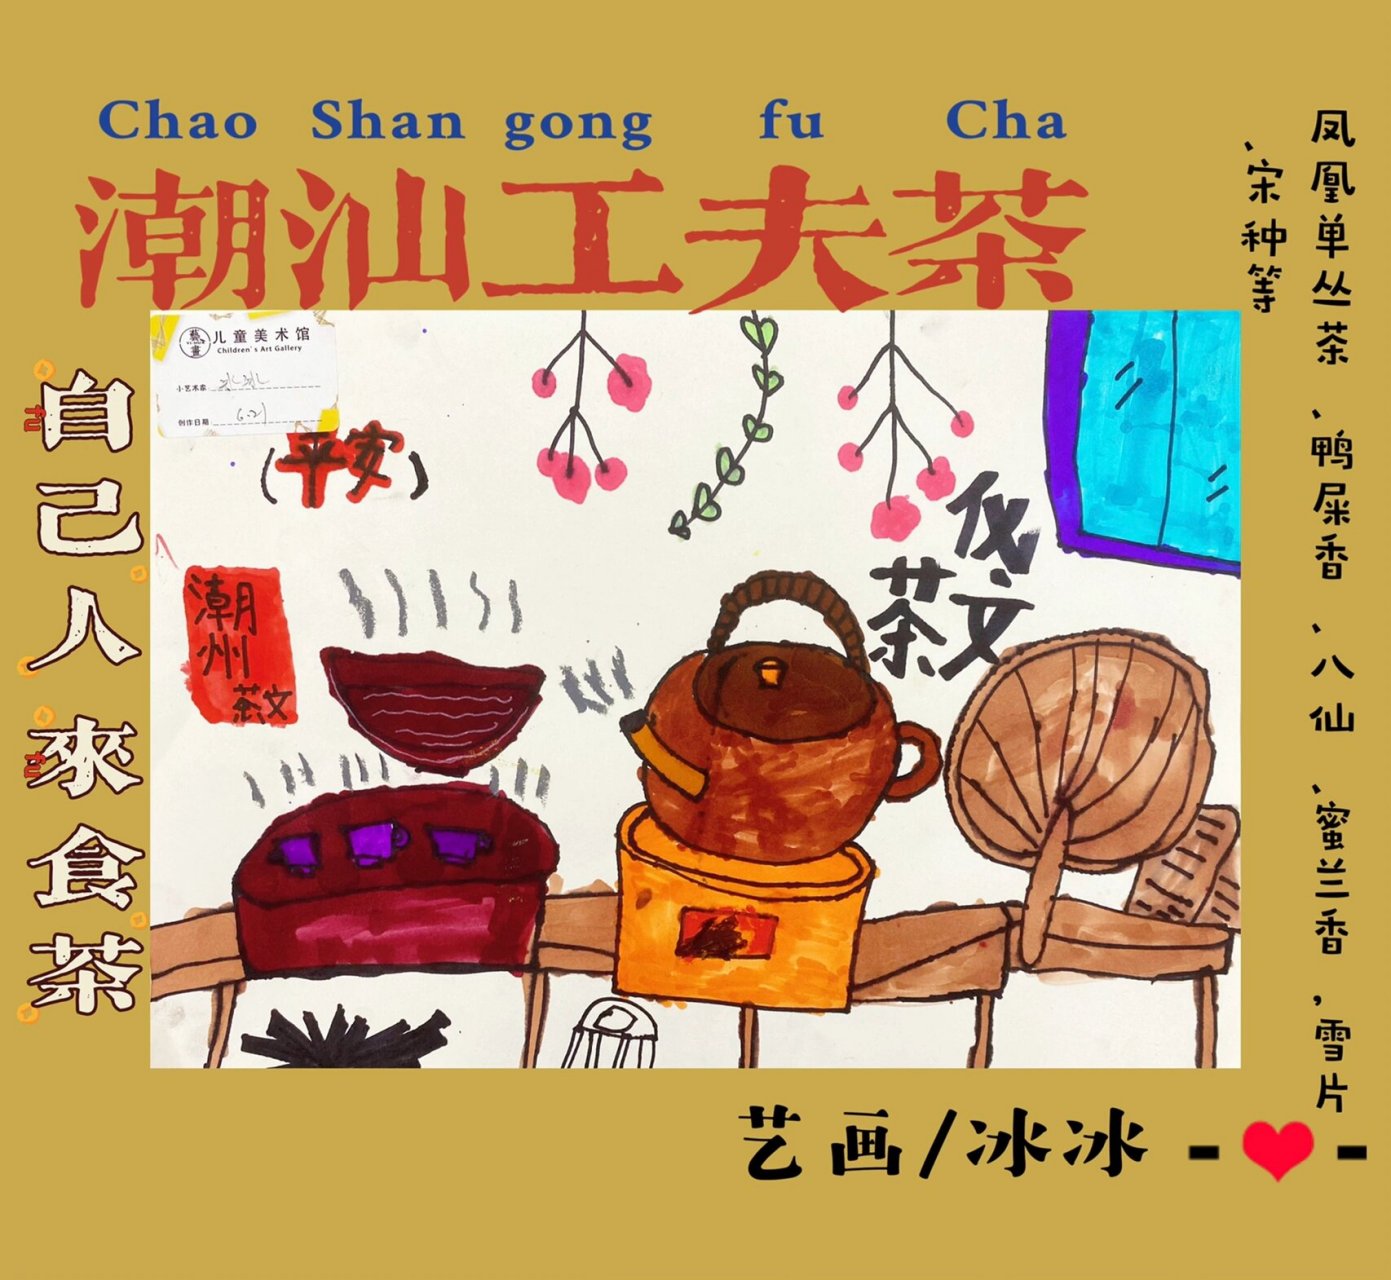 潮汕工夫茶/茶文化/创意儿童画 向小朋友介绍潮州工夫茶 爷爷那一代人